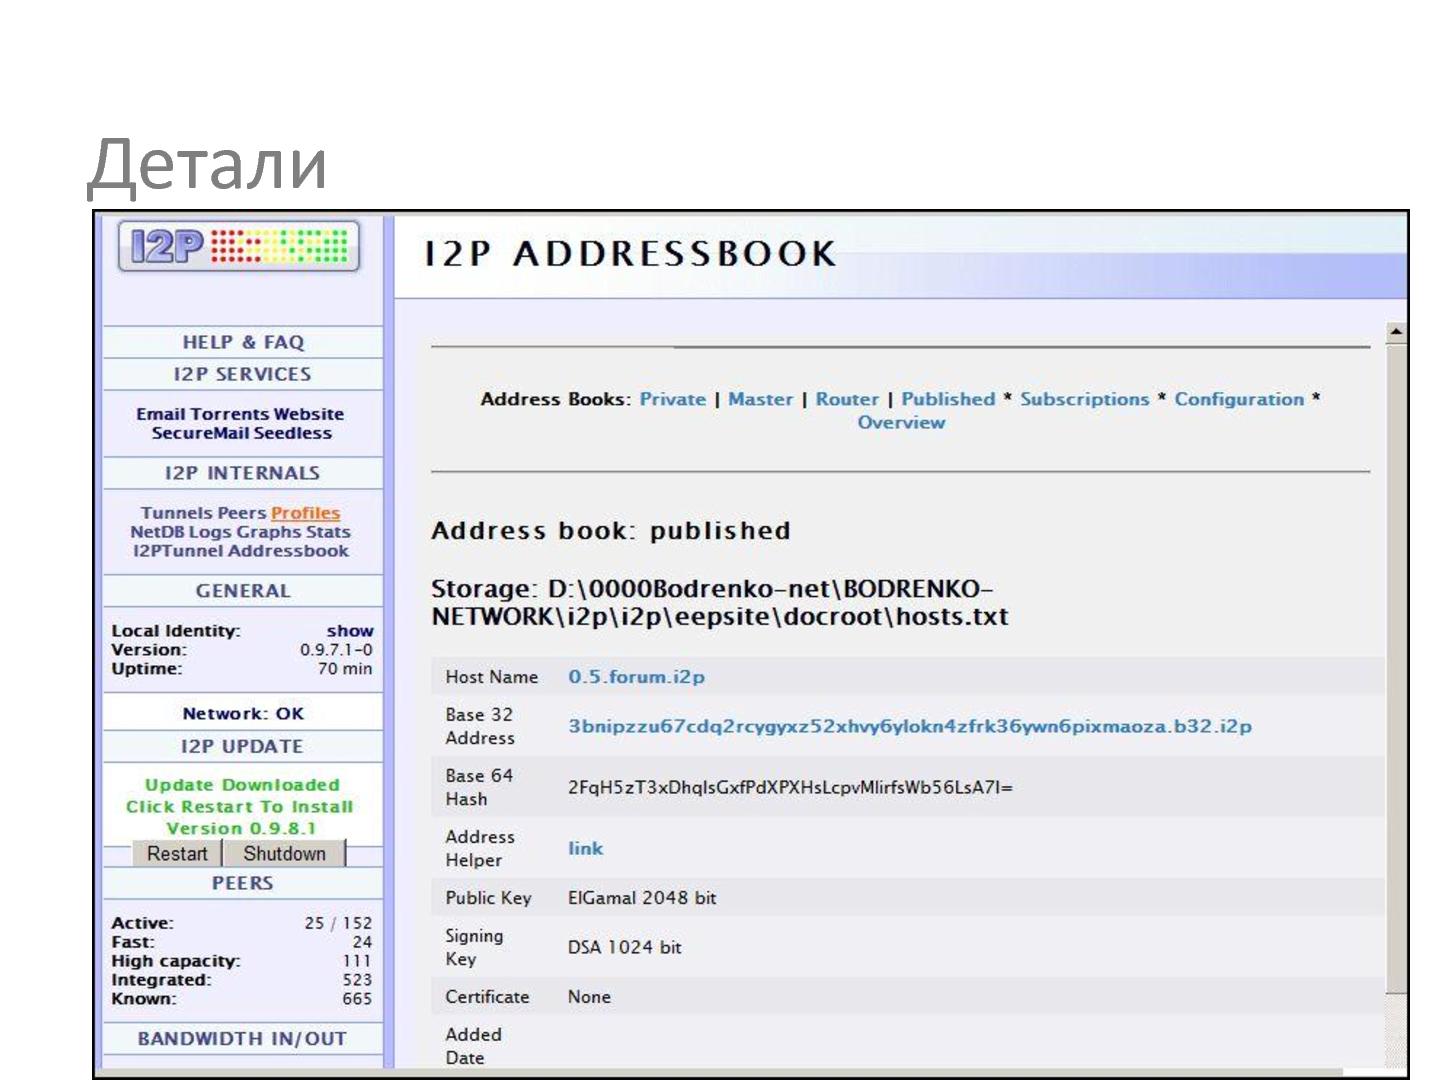 Файл:Система видеосвязи для невидимого интернета (Андрей Бодренко, SECR-2013).pdf